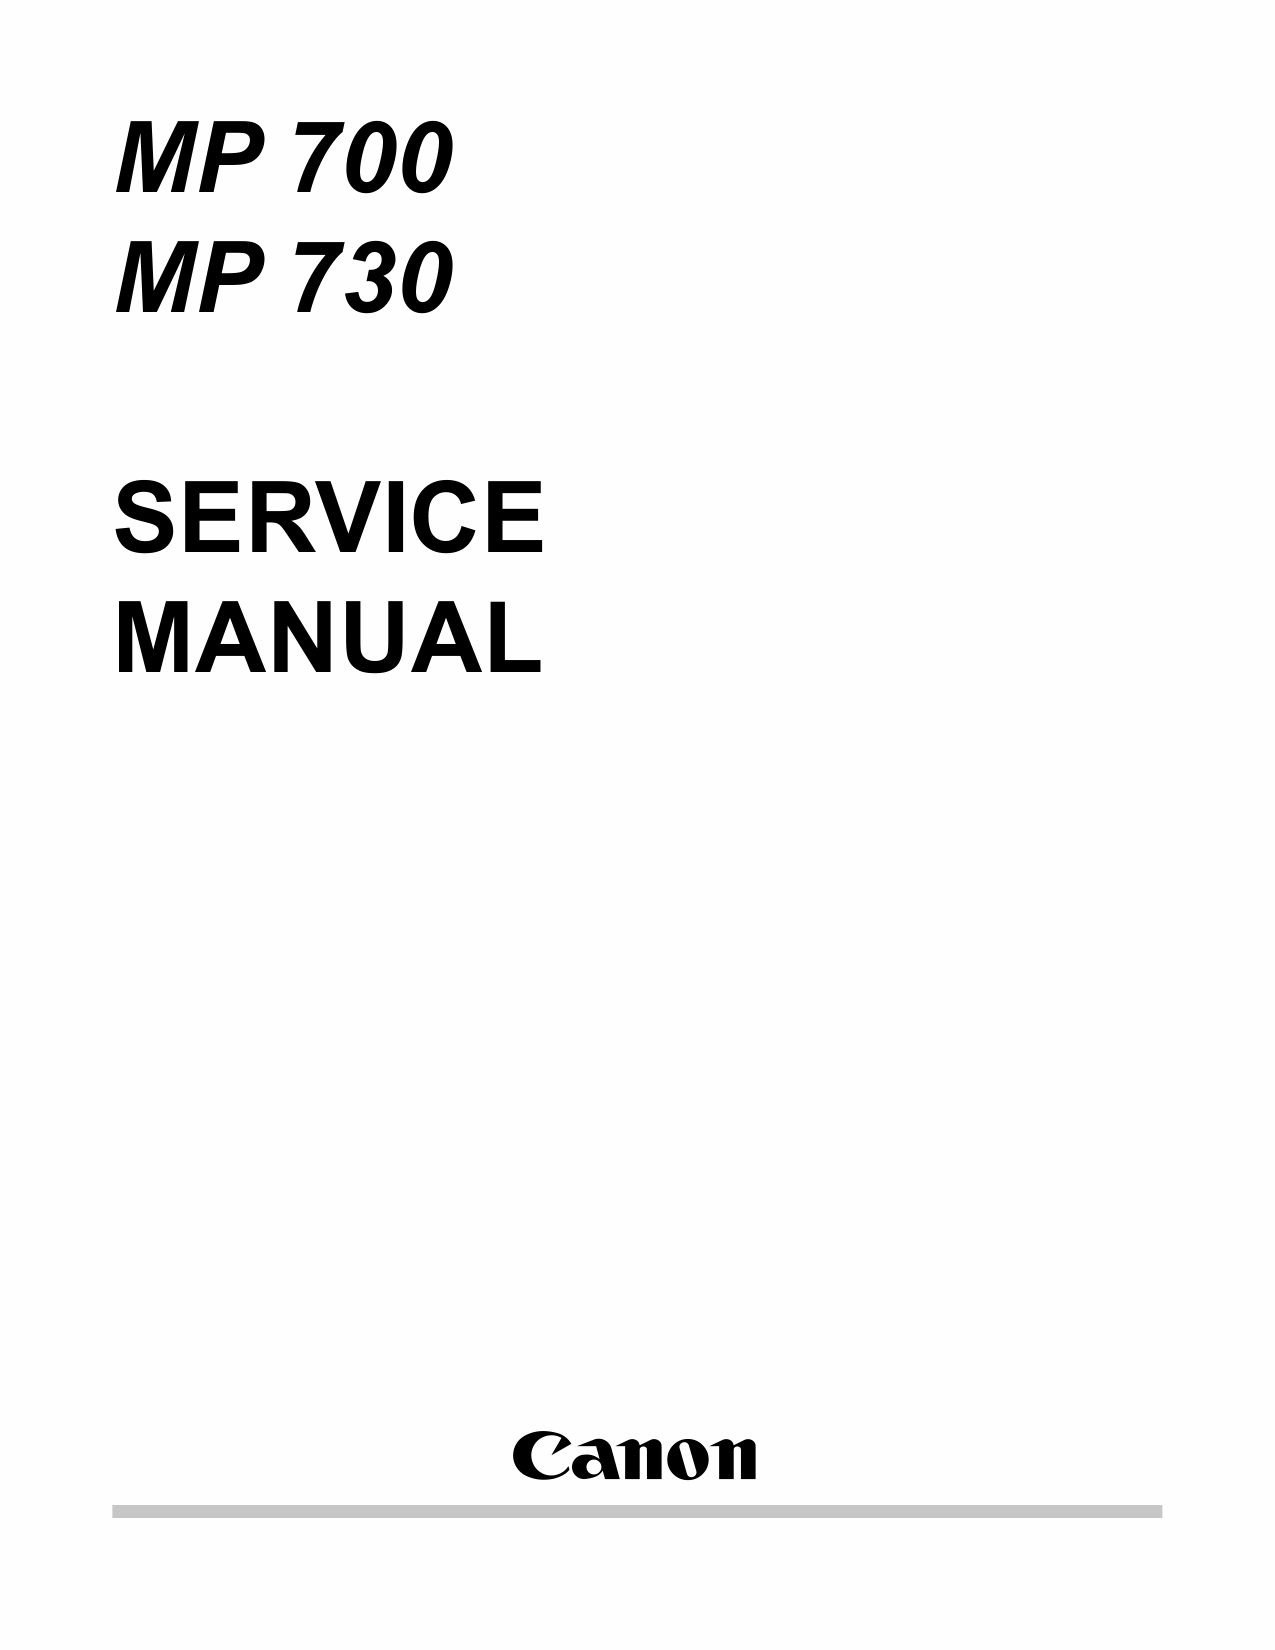 Canon PIXMA MP700 MP730 Service Manual-1